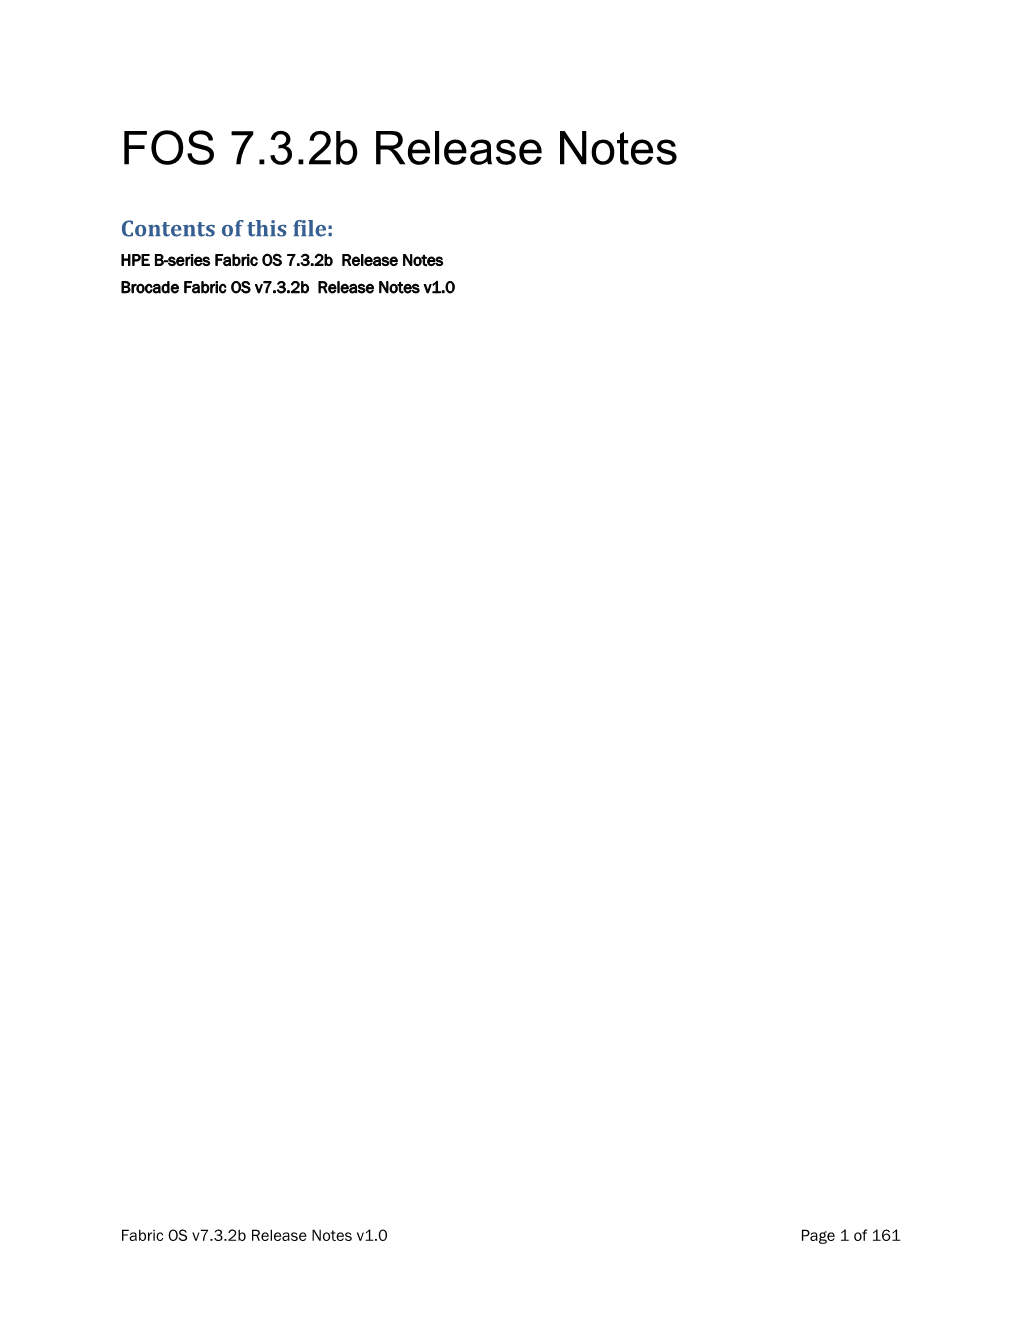 Brocade Fabric OS V7.3.2B Release Notes V1.0